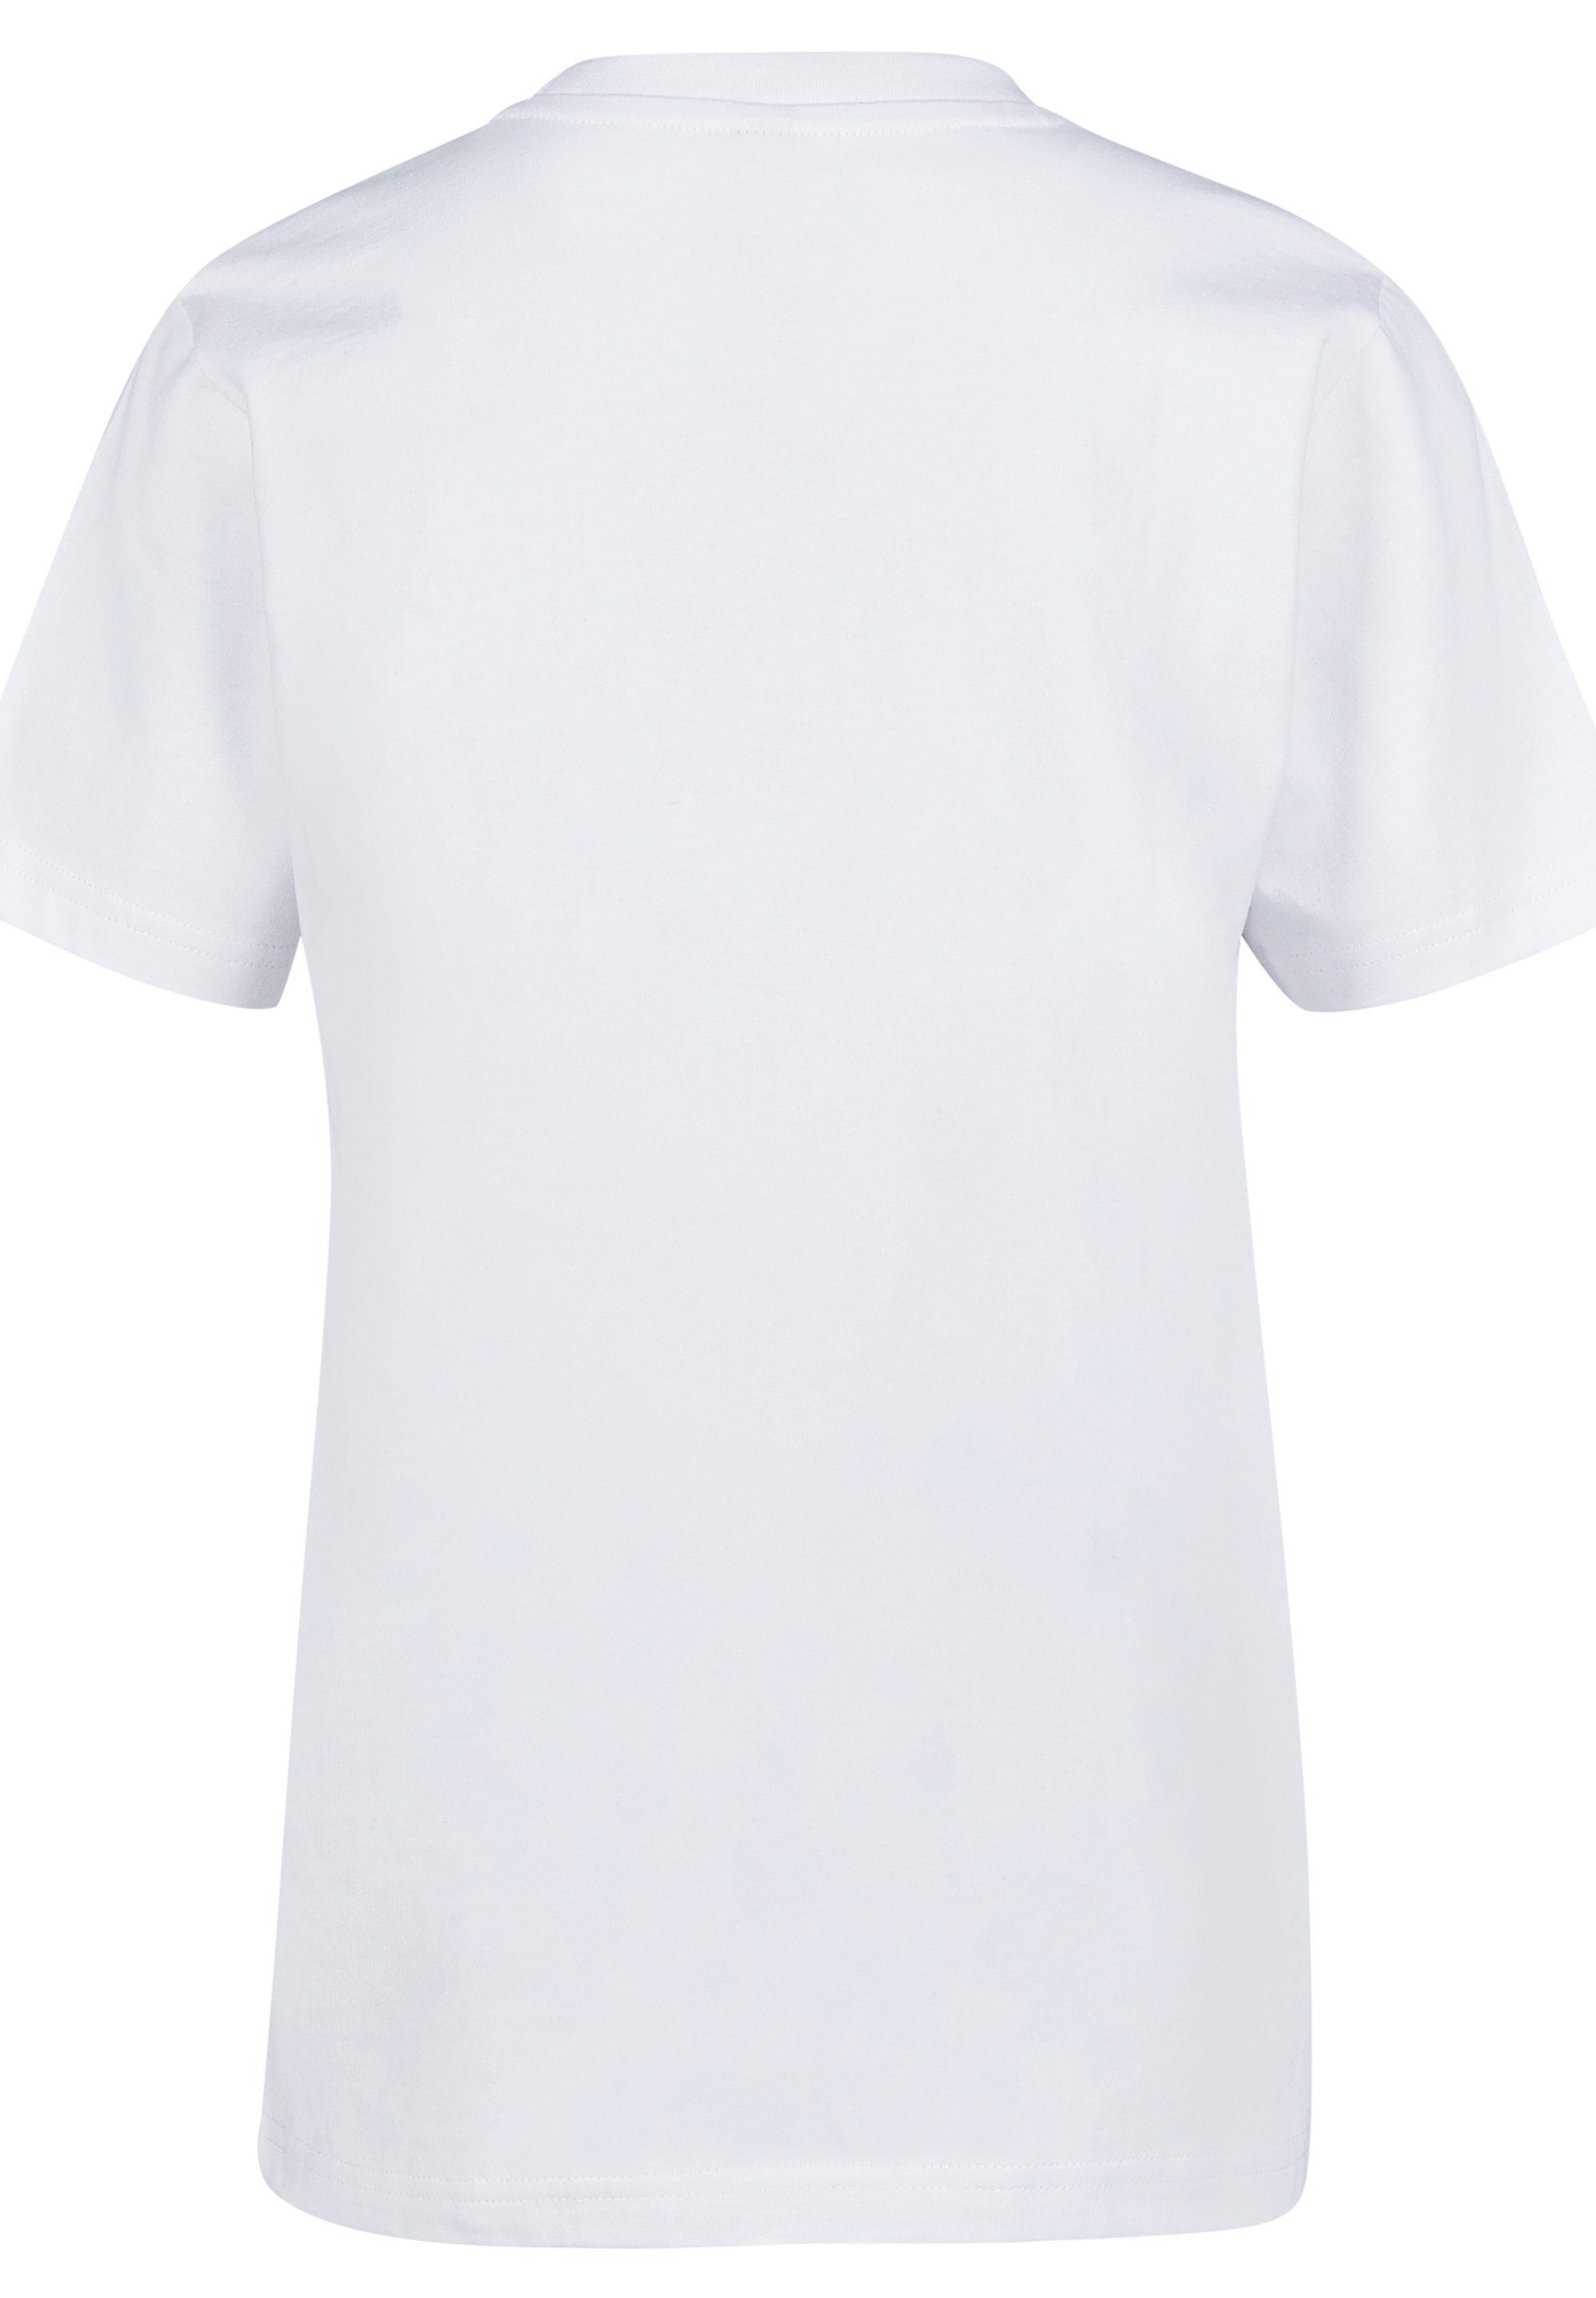 F4NT4STIC T-Shirt Star Wars Minimalist Merch,Jungen,Mädchen,Bedruckt Logo Kinder,Premium Unisex